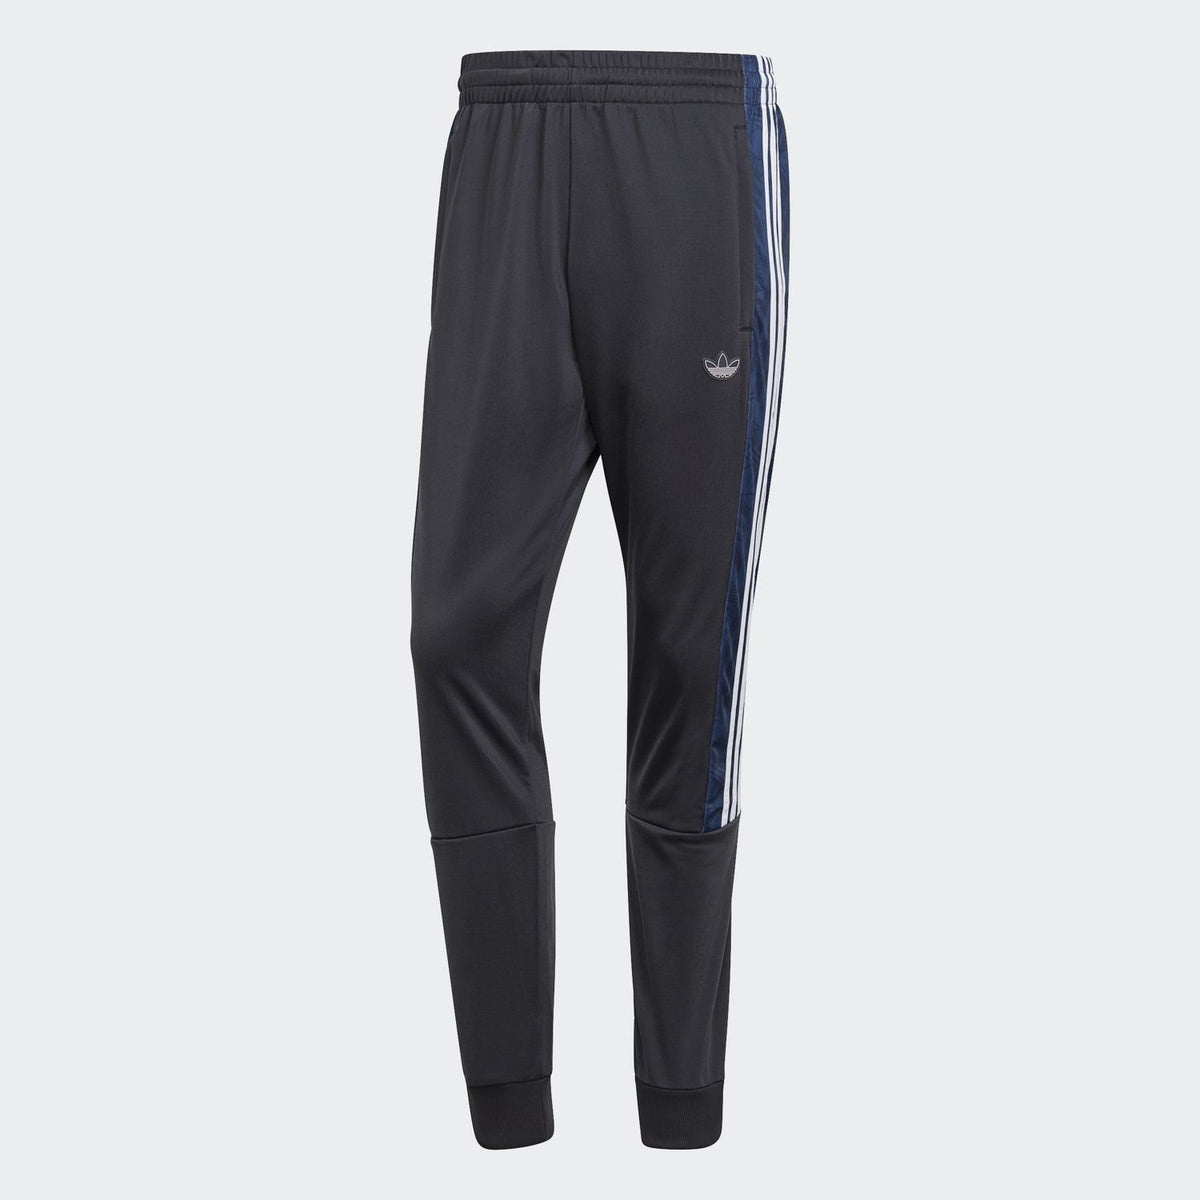 Adidas Men's BX-20 Graphic Sweat Pants GD5830